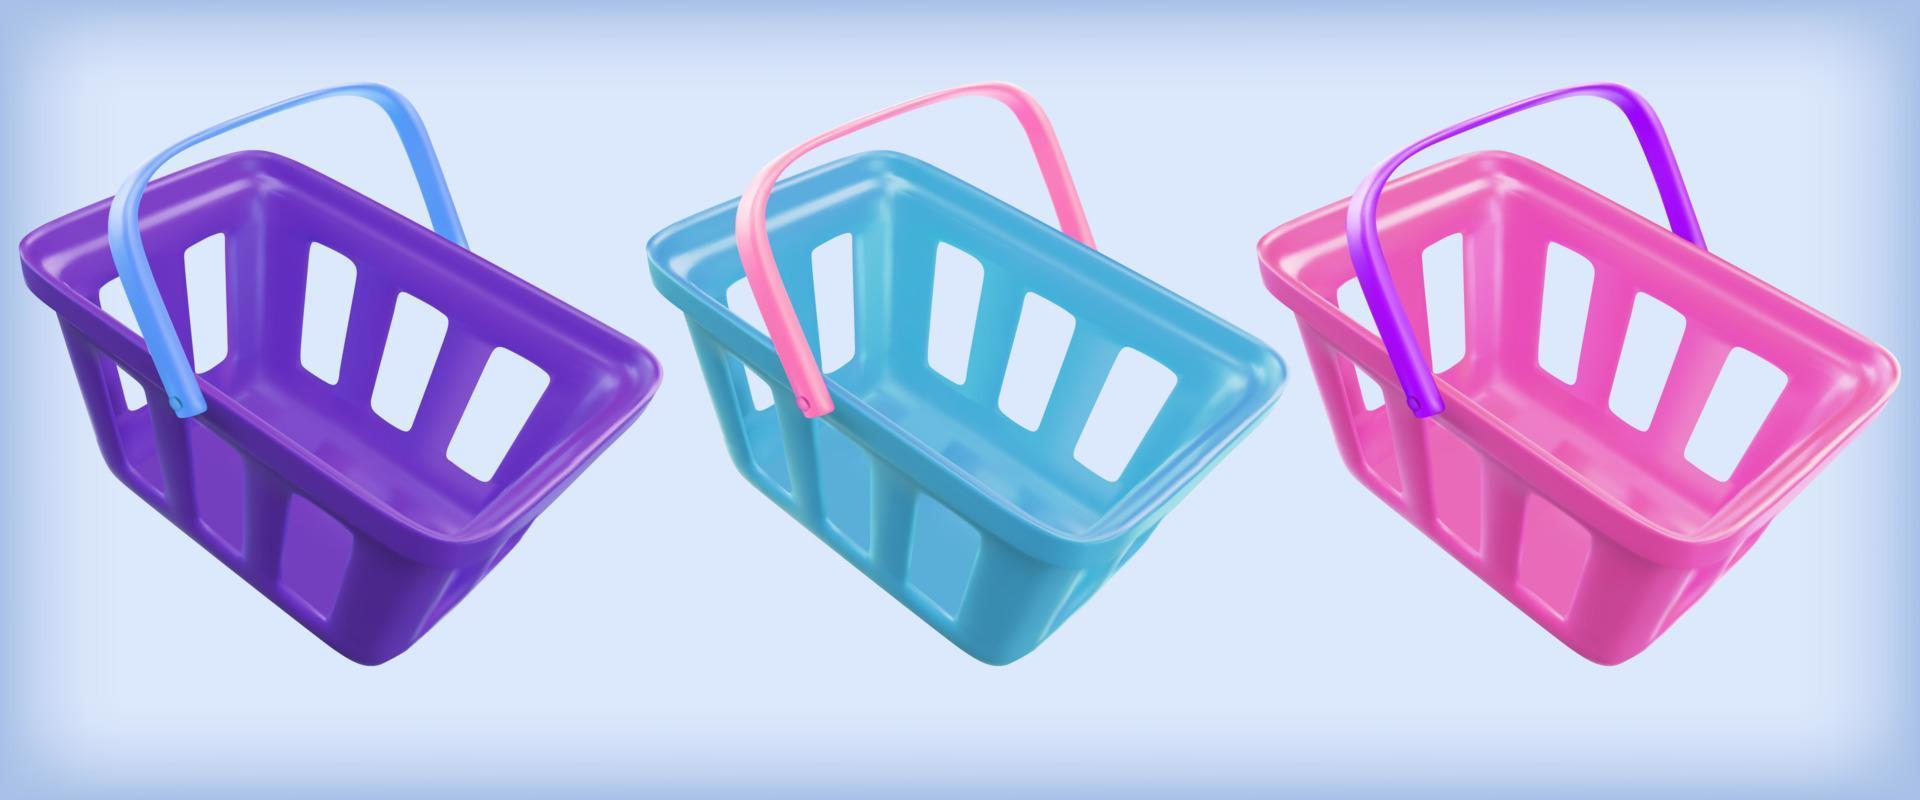 carrito de compras. juego de cesta de comida realista. renderizado vectorial 3d en estilo plástico. vector